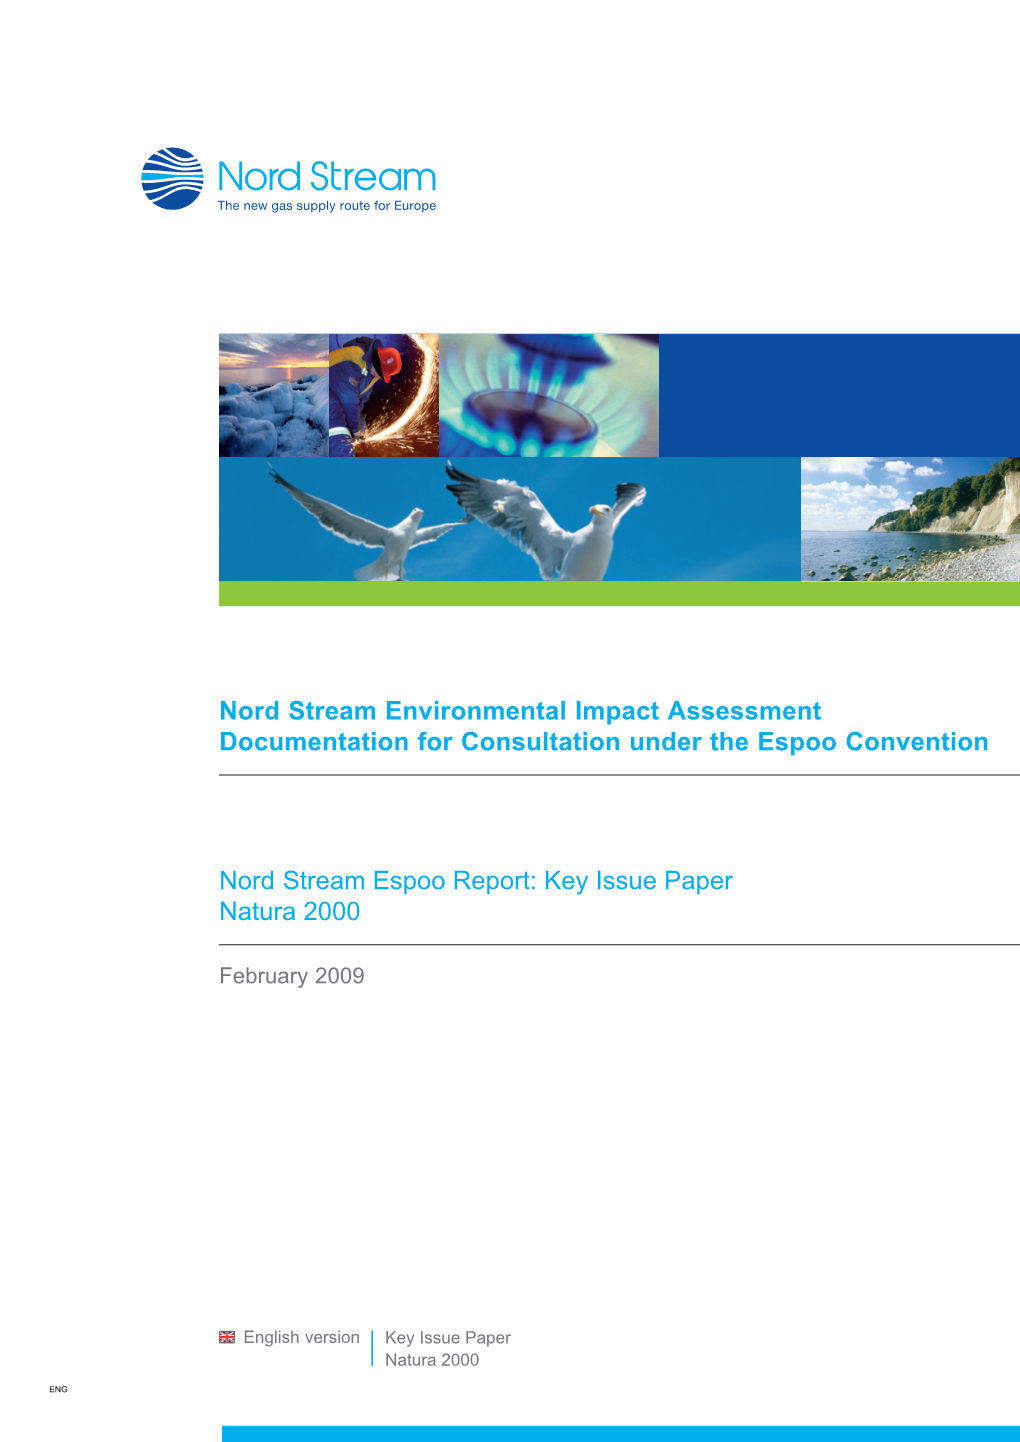 Espoo Report: Key Issue Paper Natura 2000